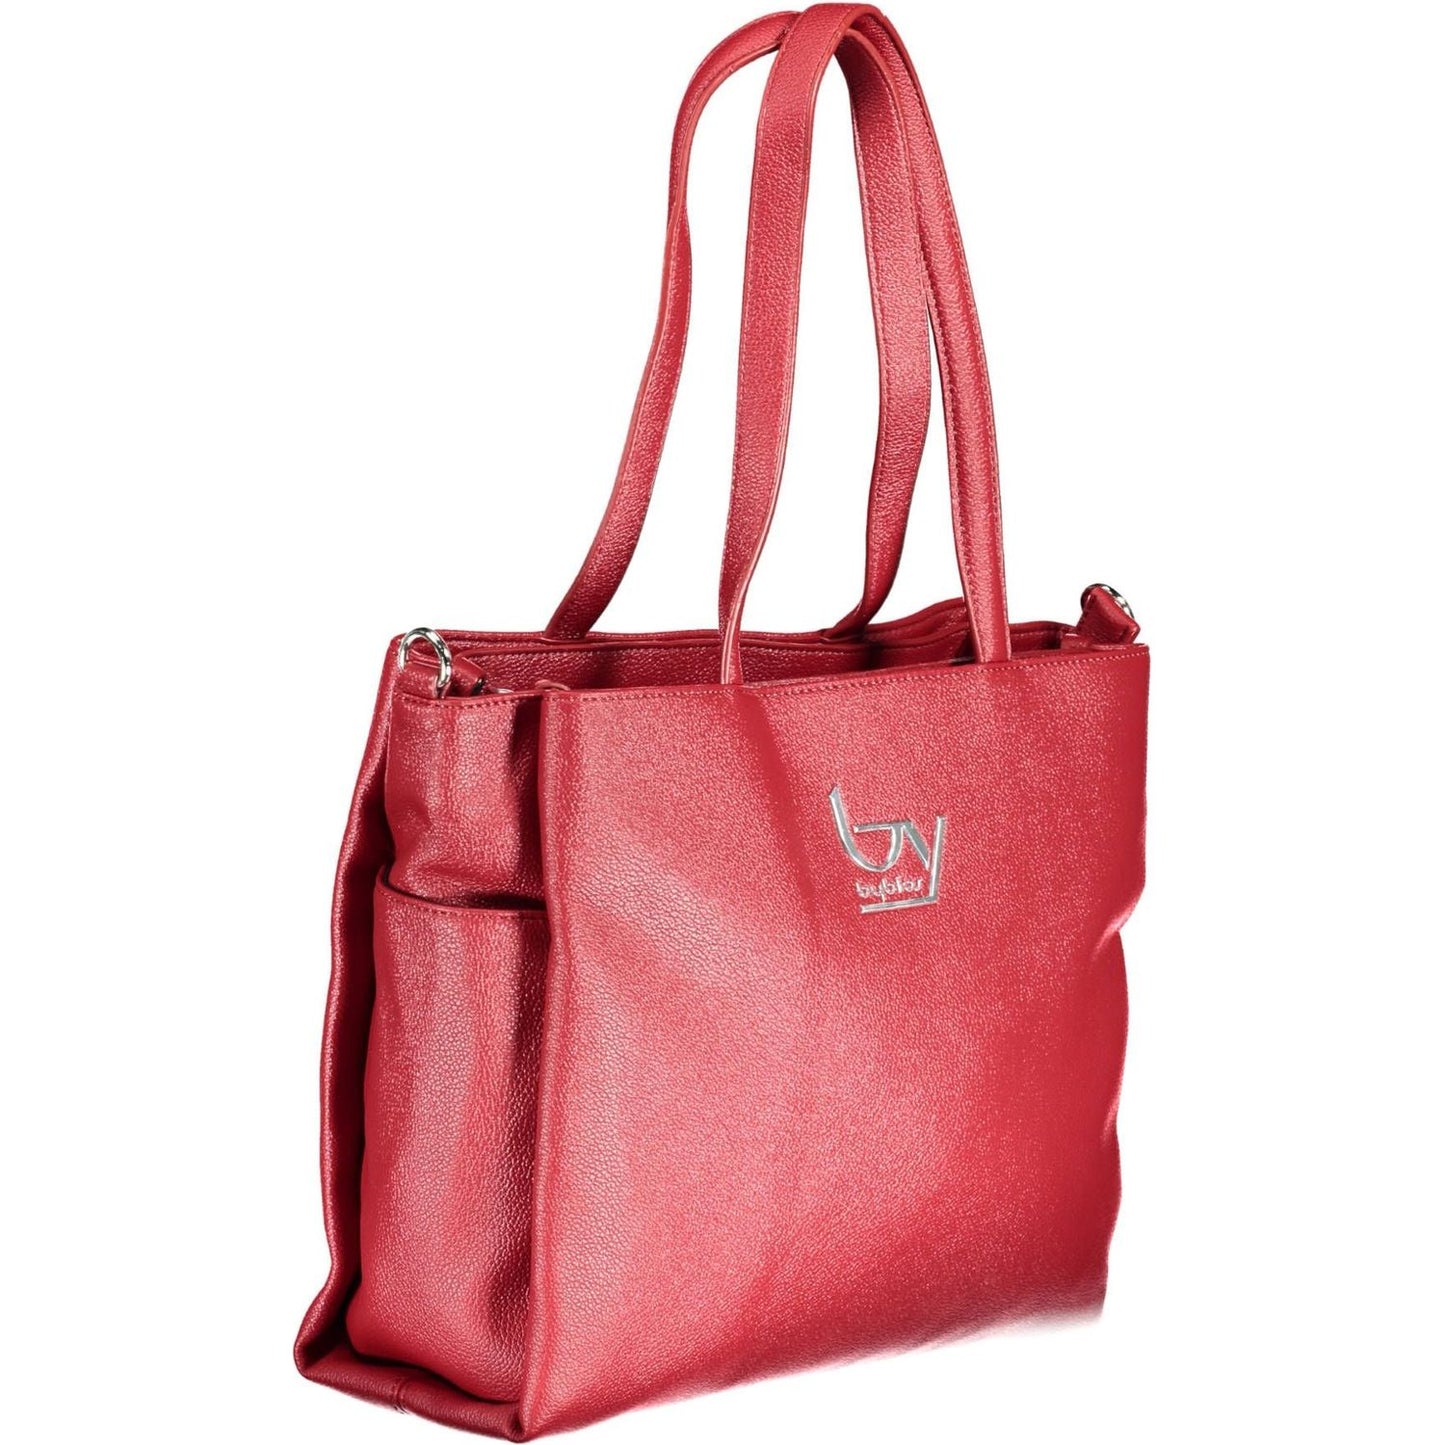 BYBLOS | Chic Red Convertible Shoulder Bag| McRichard Designer Brands   